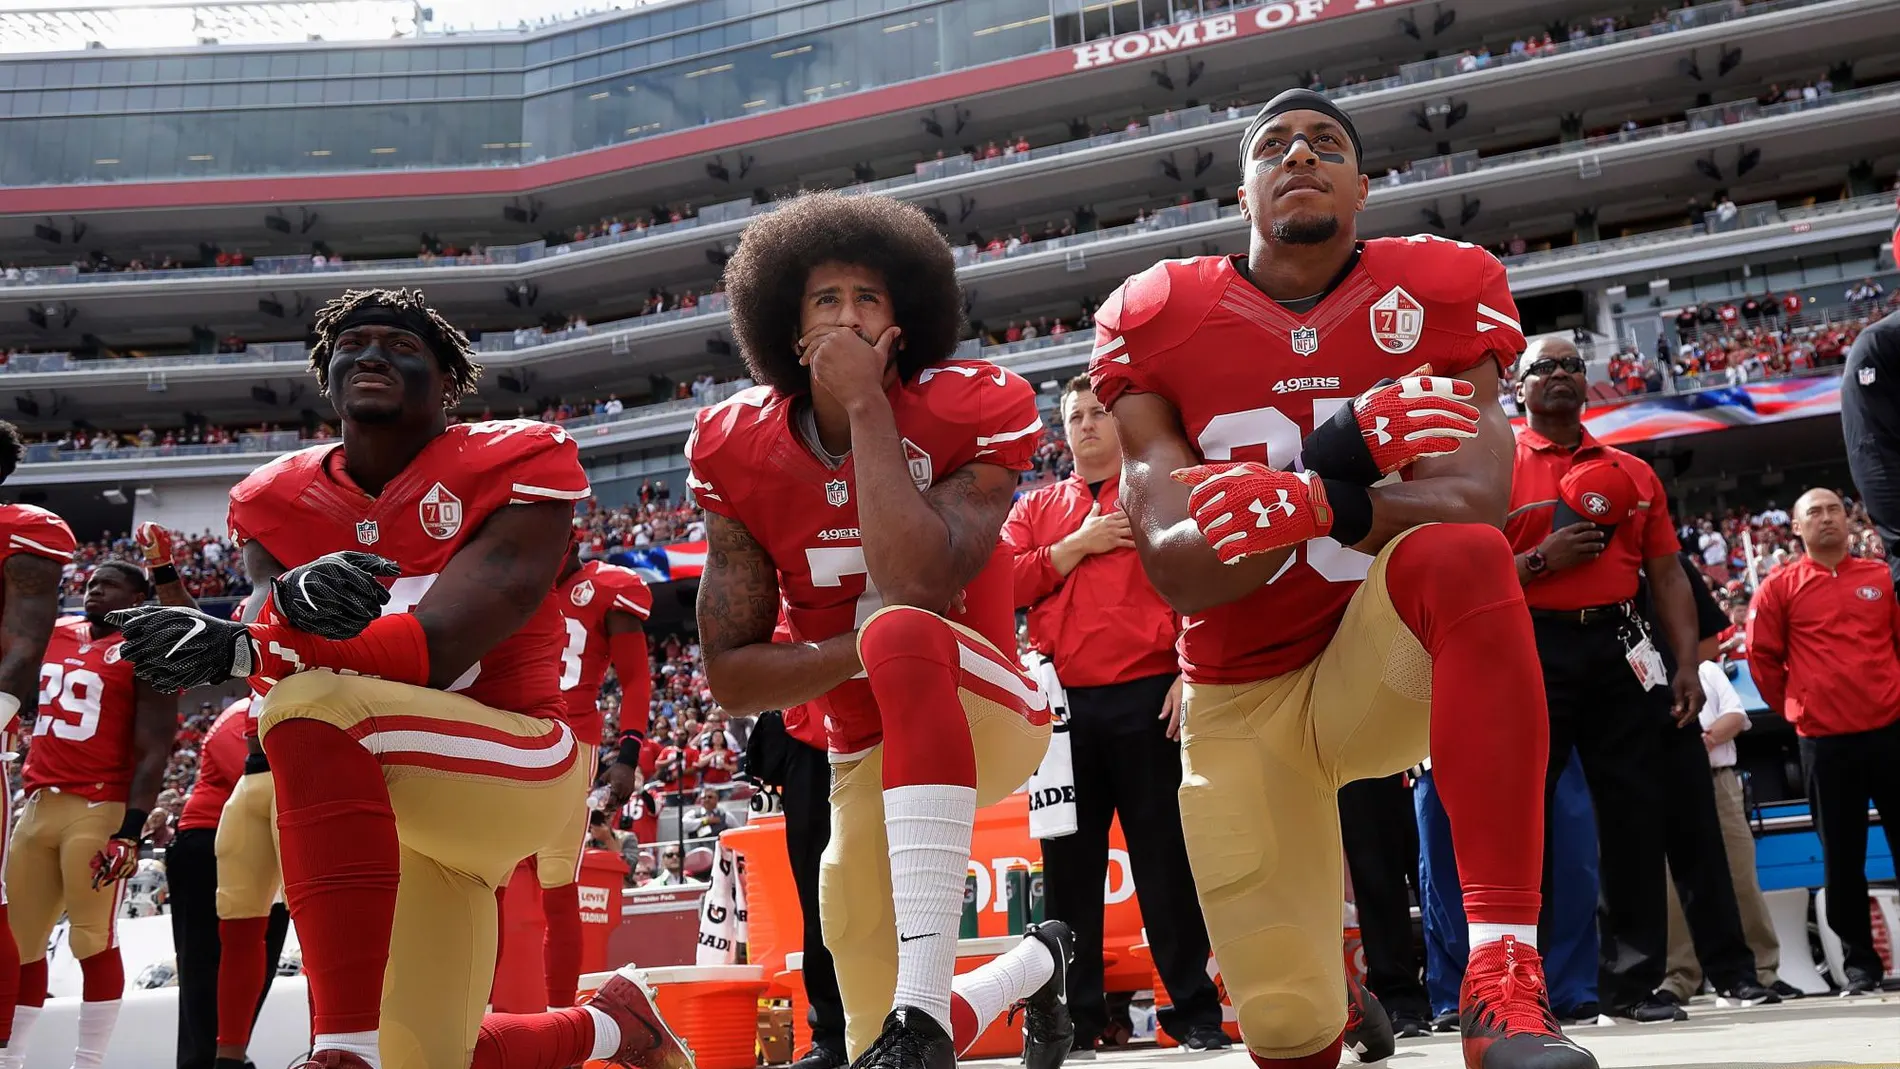 Colin Kaepernick, exquaterback de los San Francisco 49ers (centro), se arrodilla durante el himno nacional de EEUU como protesta contra el racismo en el país